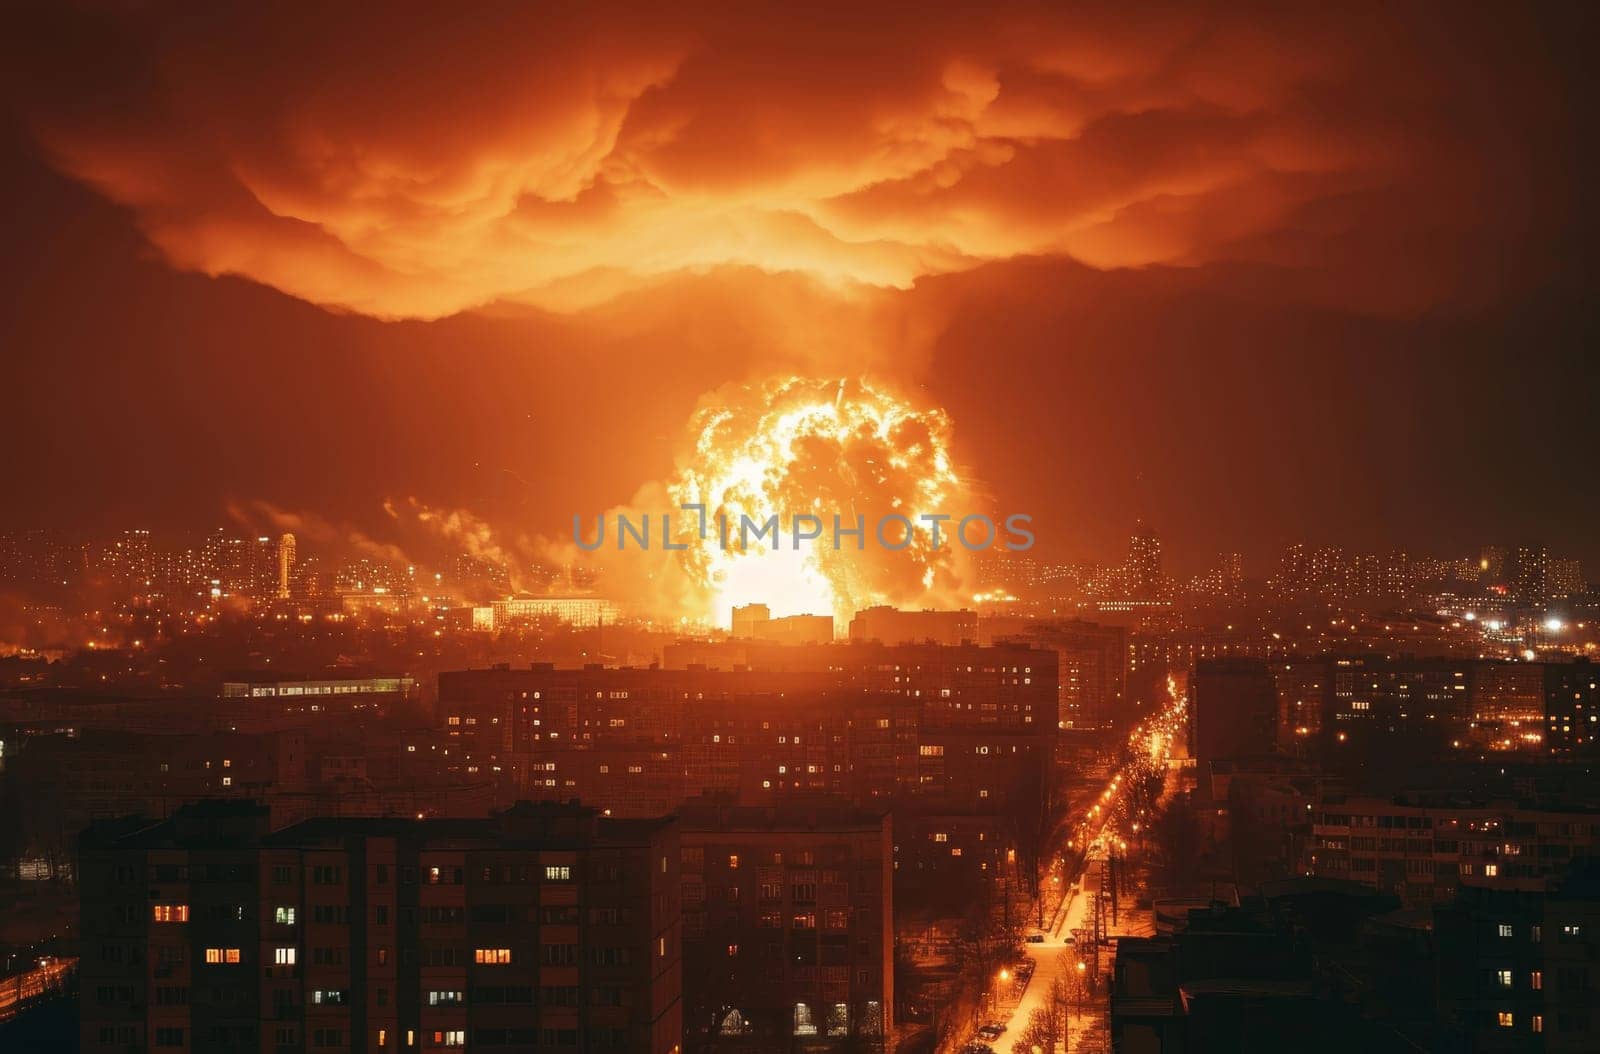 Massive Fire Engulfs City Skyline in Fiery Blaze by gcm